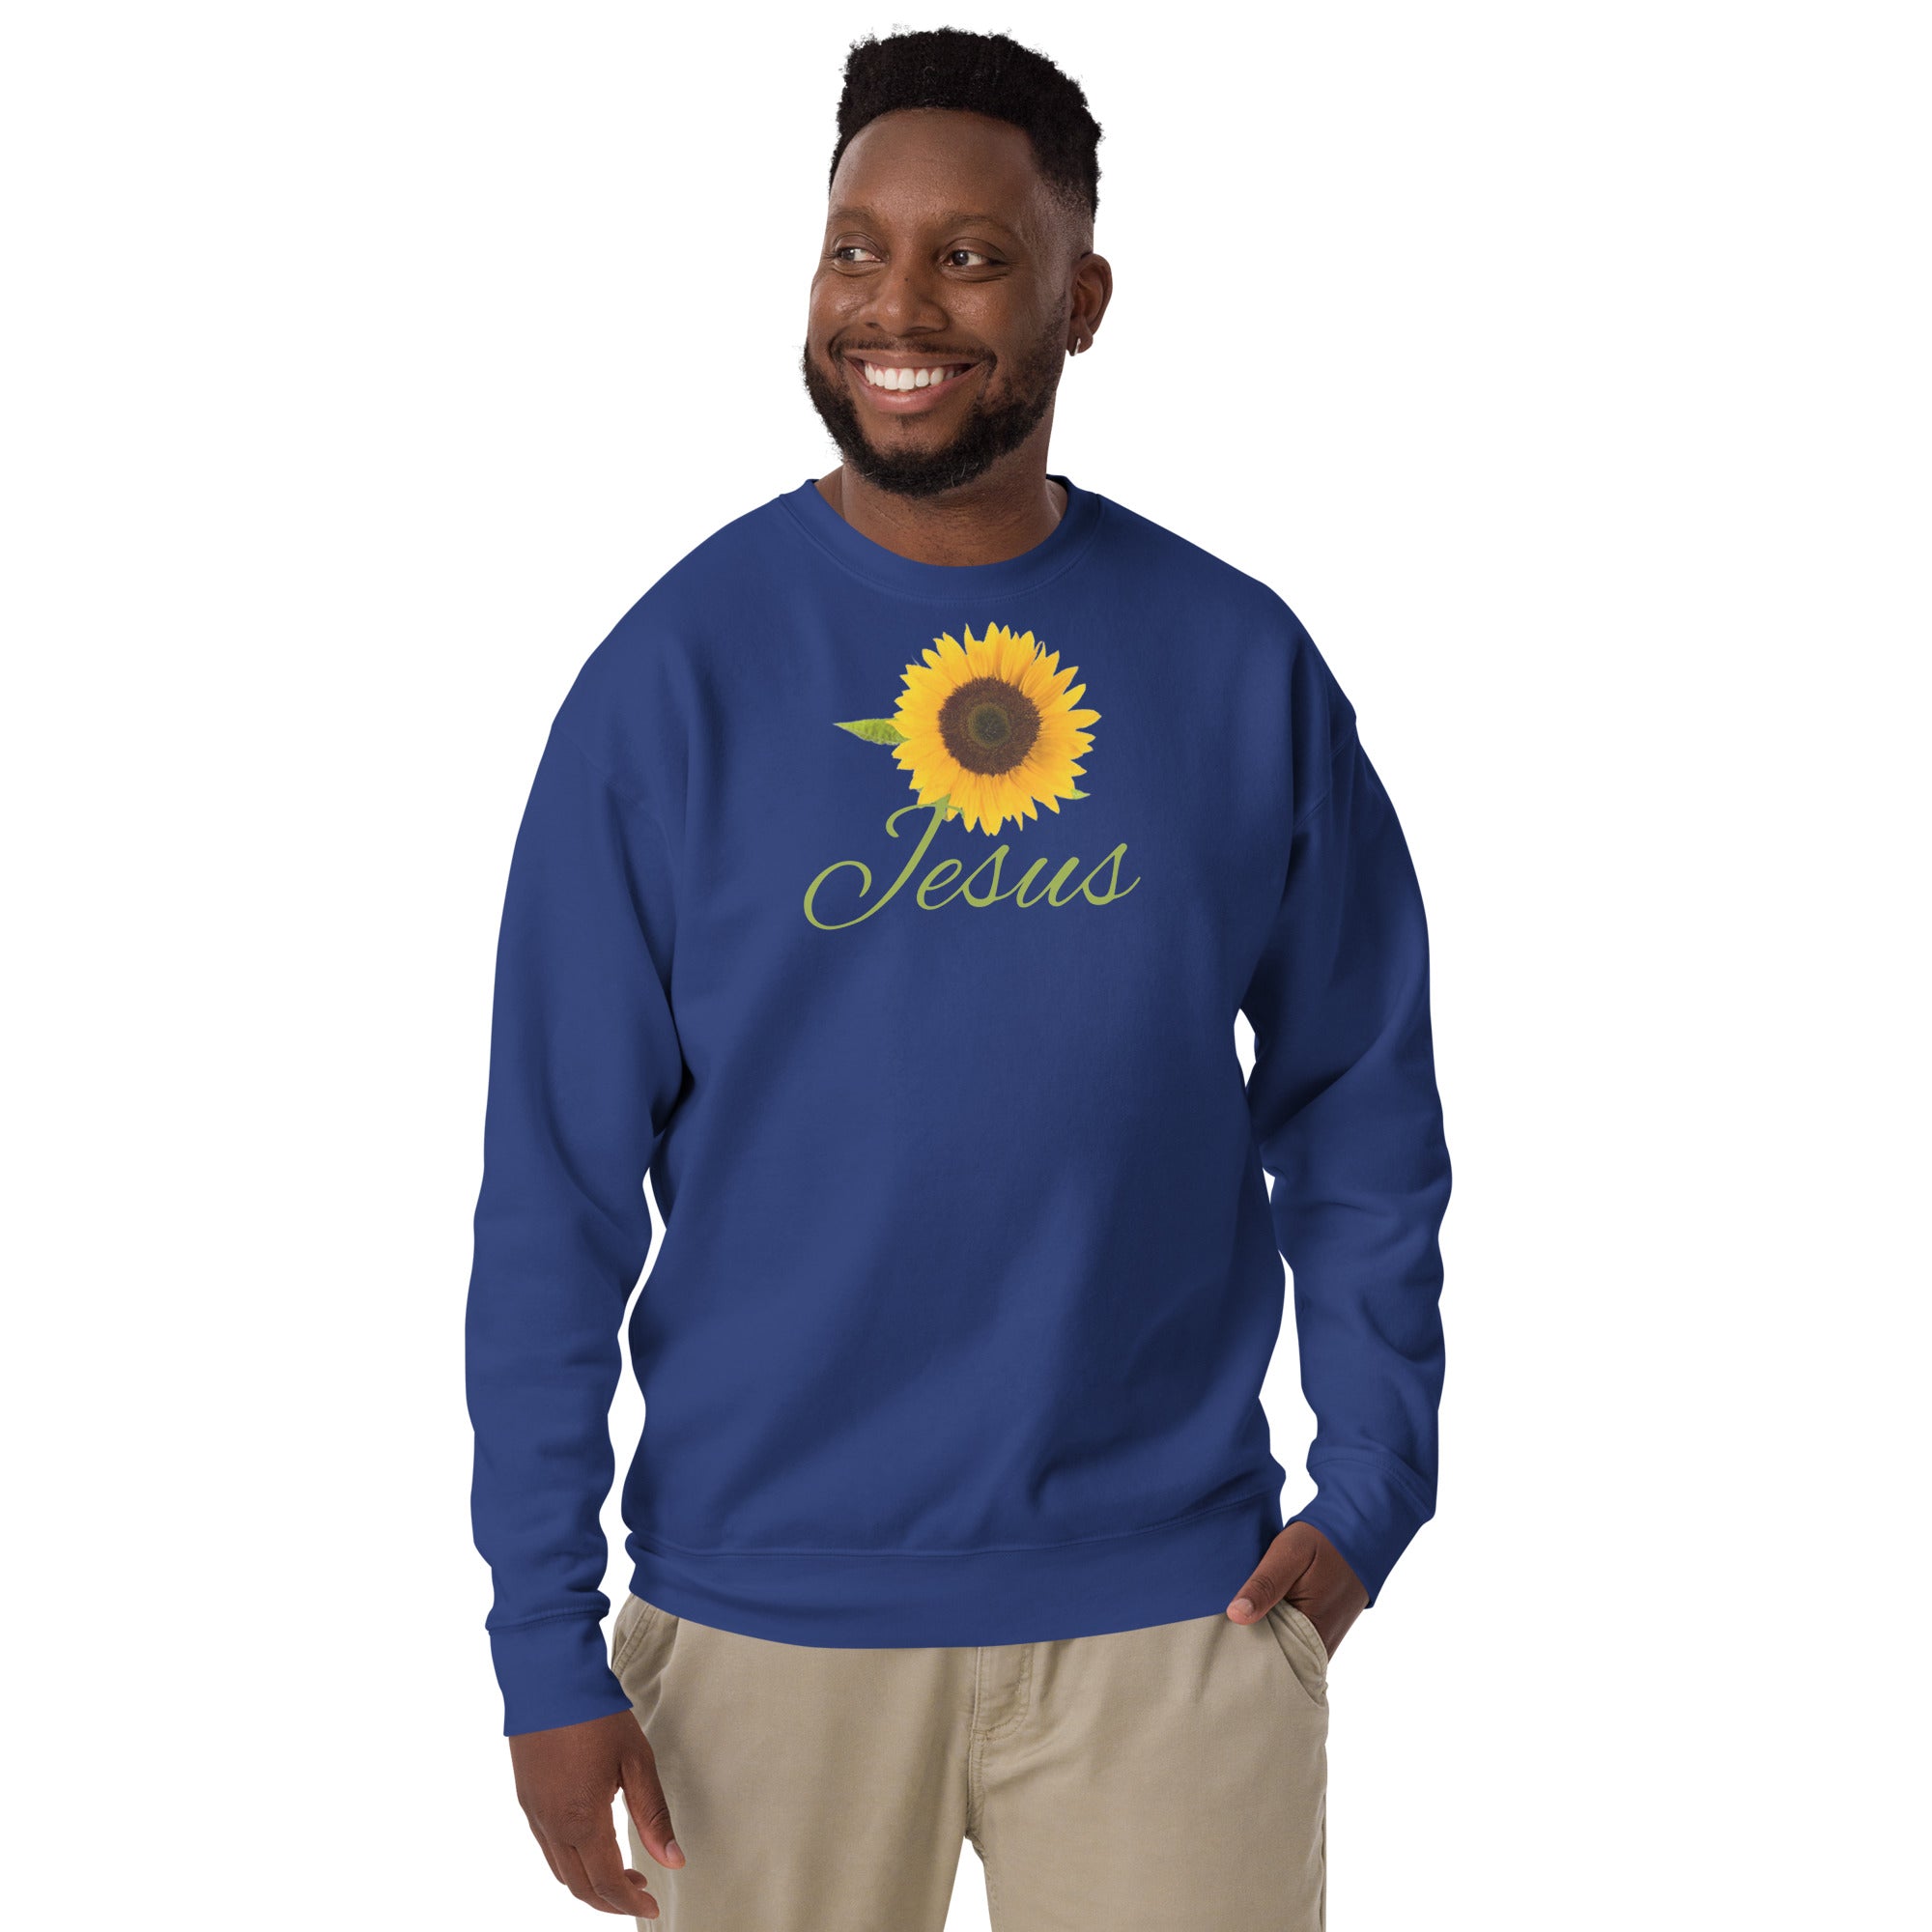 Jesus Unisex Premium Sweatshirt